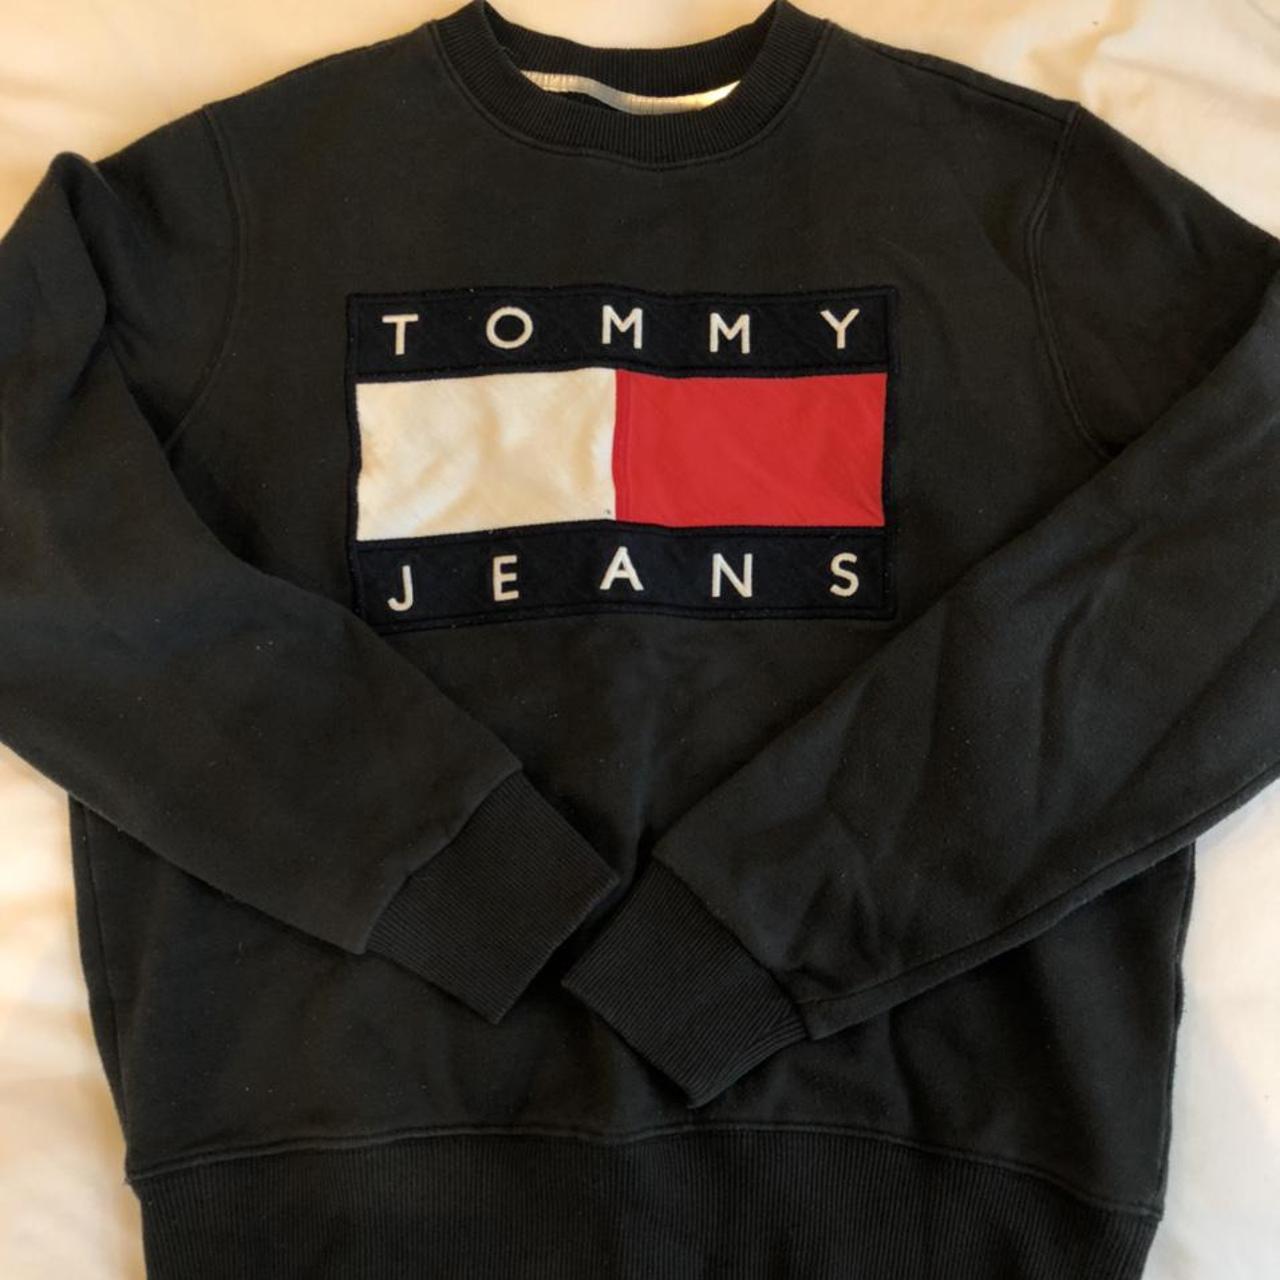 Amazing Tommy Hilfiger jeans jumper!! Really comfy... - Depop